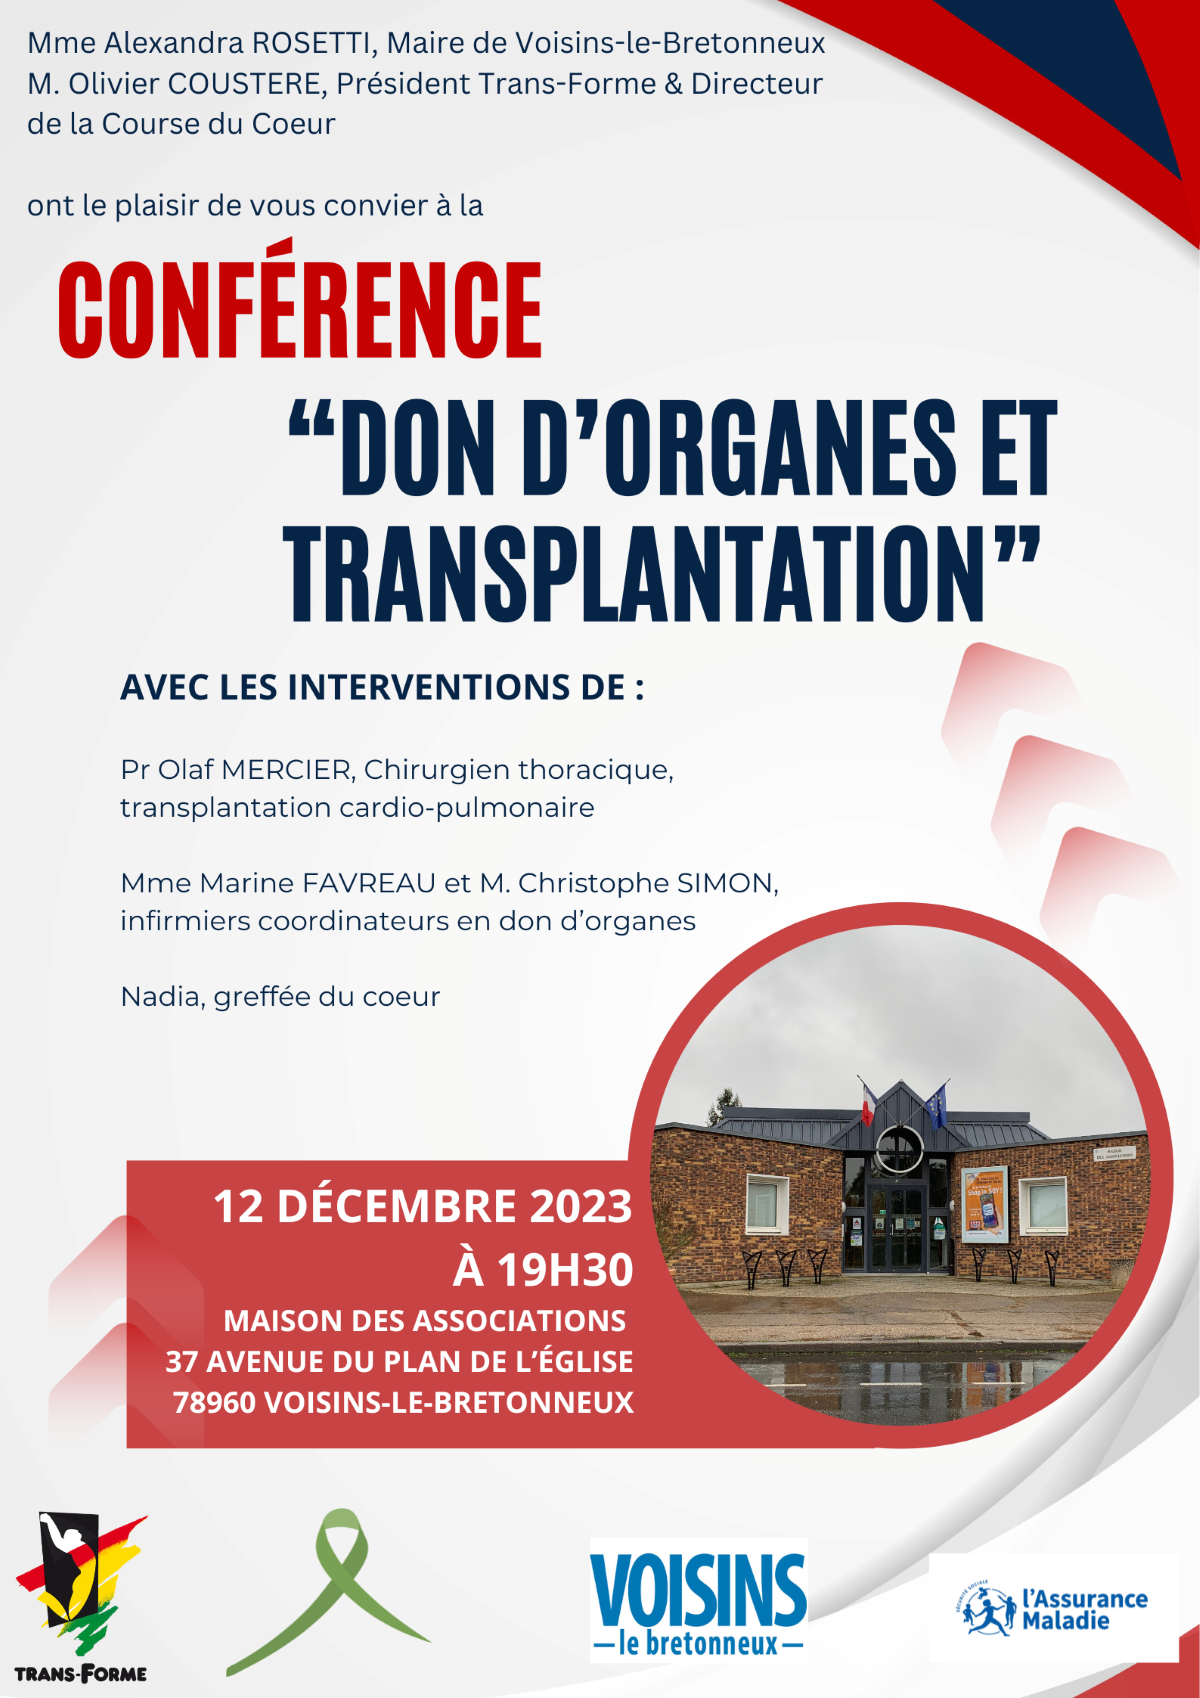 Affiche conférence Voisins le Bretonneux 12 décembre 2023 web